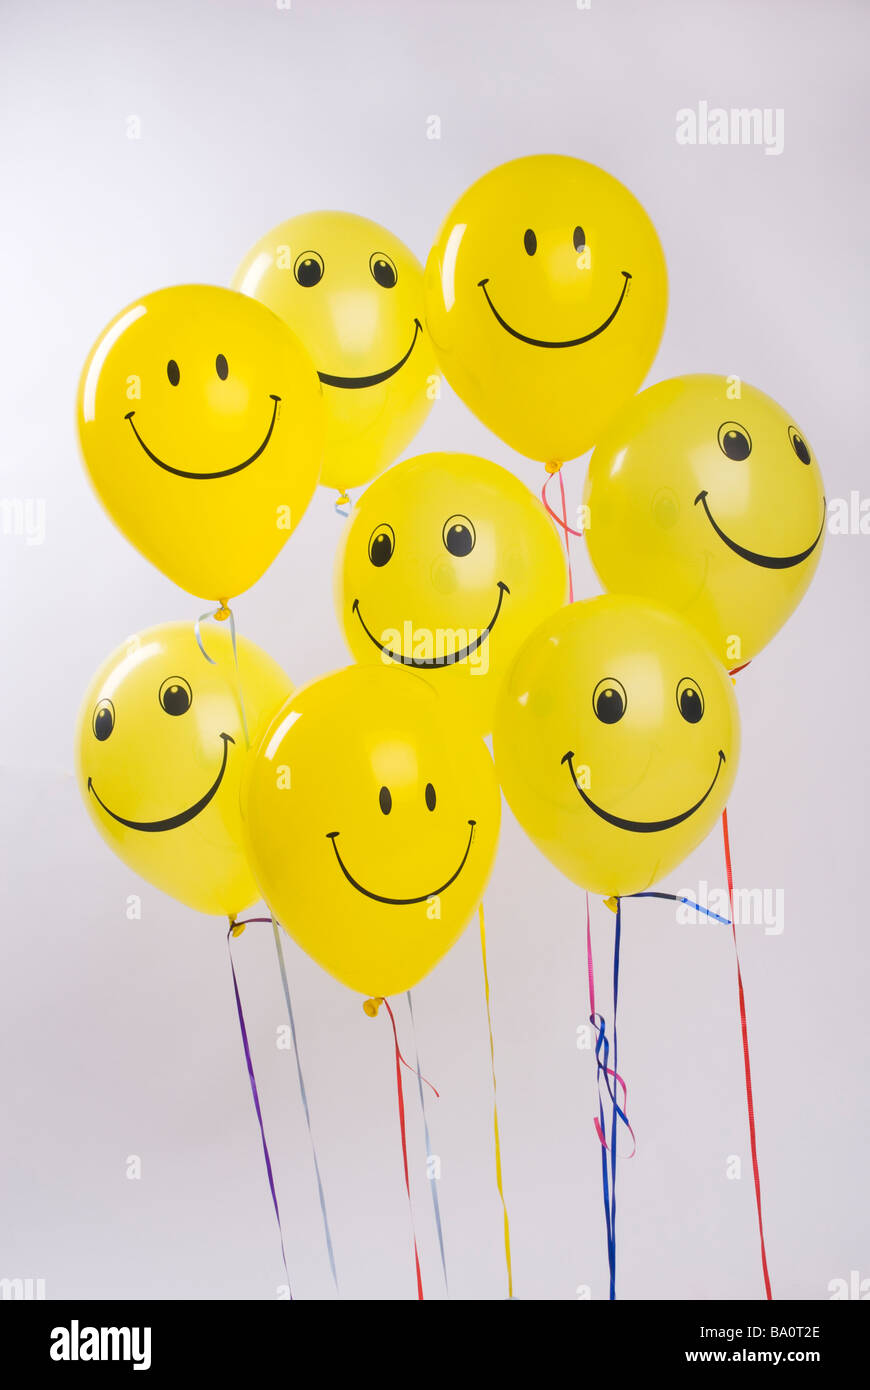 Smily faces baloons Stock Photo